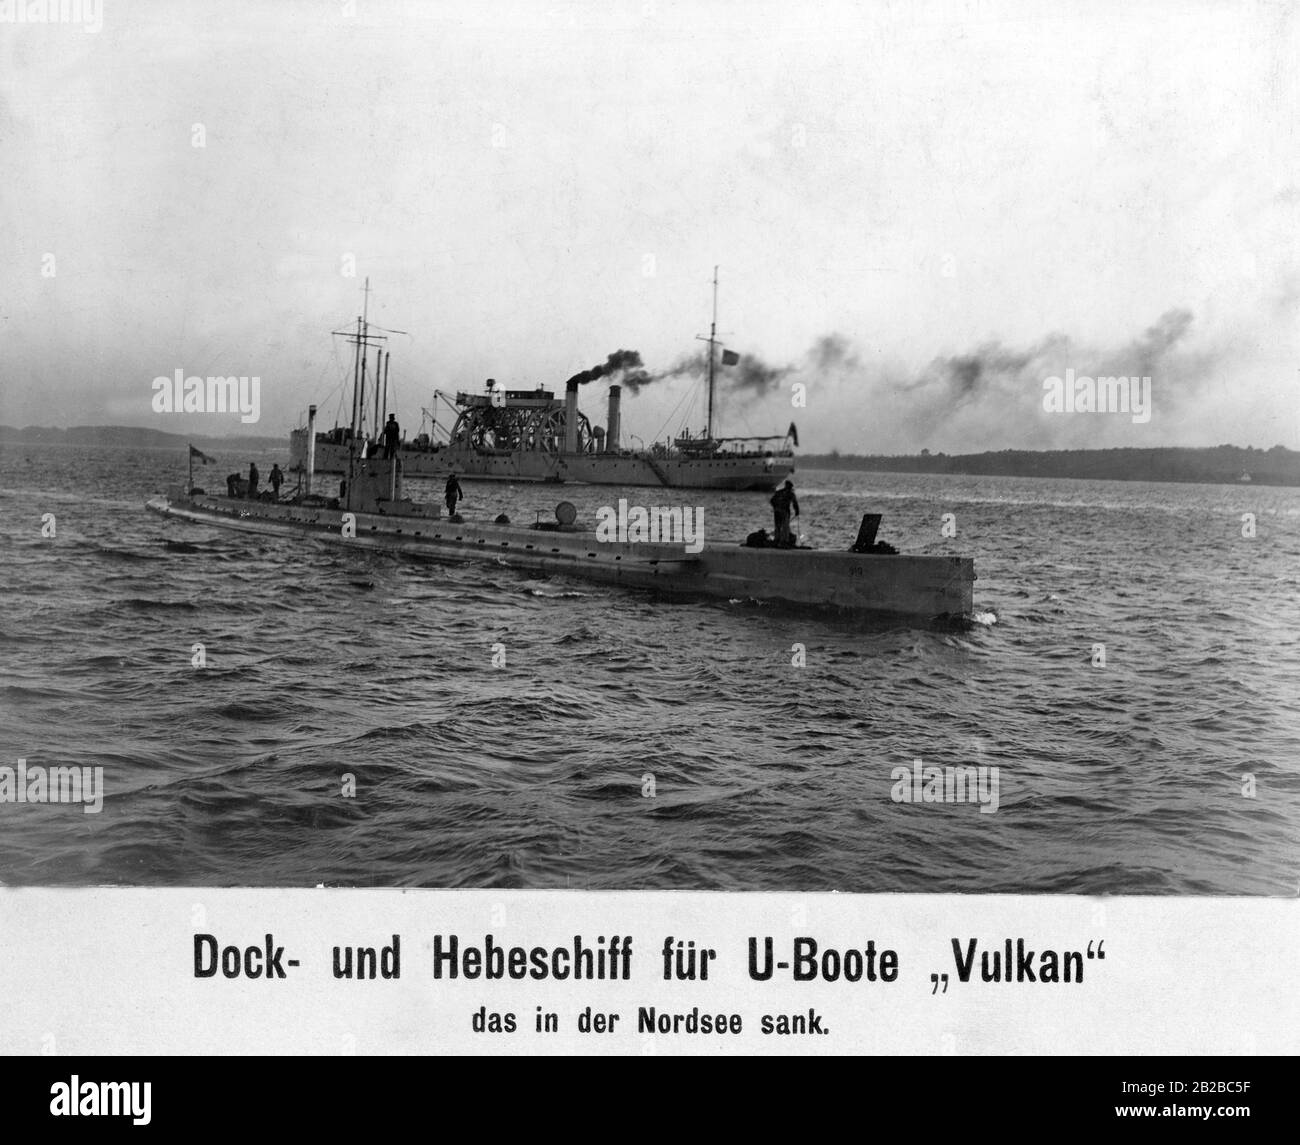 Bild des Dock- und Hubschiffs "Vulkan", das später in der Nordsee sank. Im Vordergrund steht ein U-Boot. Das Dockschiff ist ein doppeltes Schiff und gehört zum Typ des U-Boot-Bergungsschlegs. Sie wurde unter anderem zur Reparatur von U-Booten eingesetzt. Stockfoto